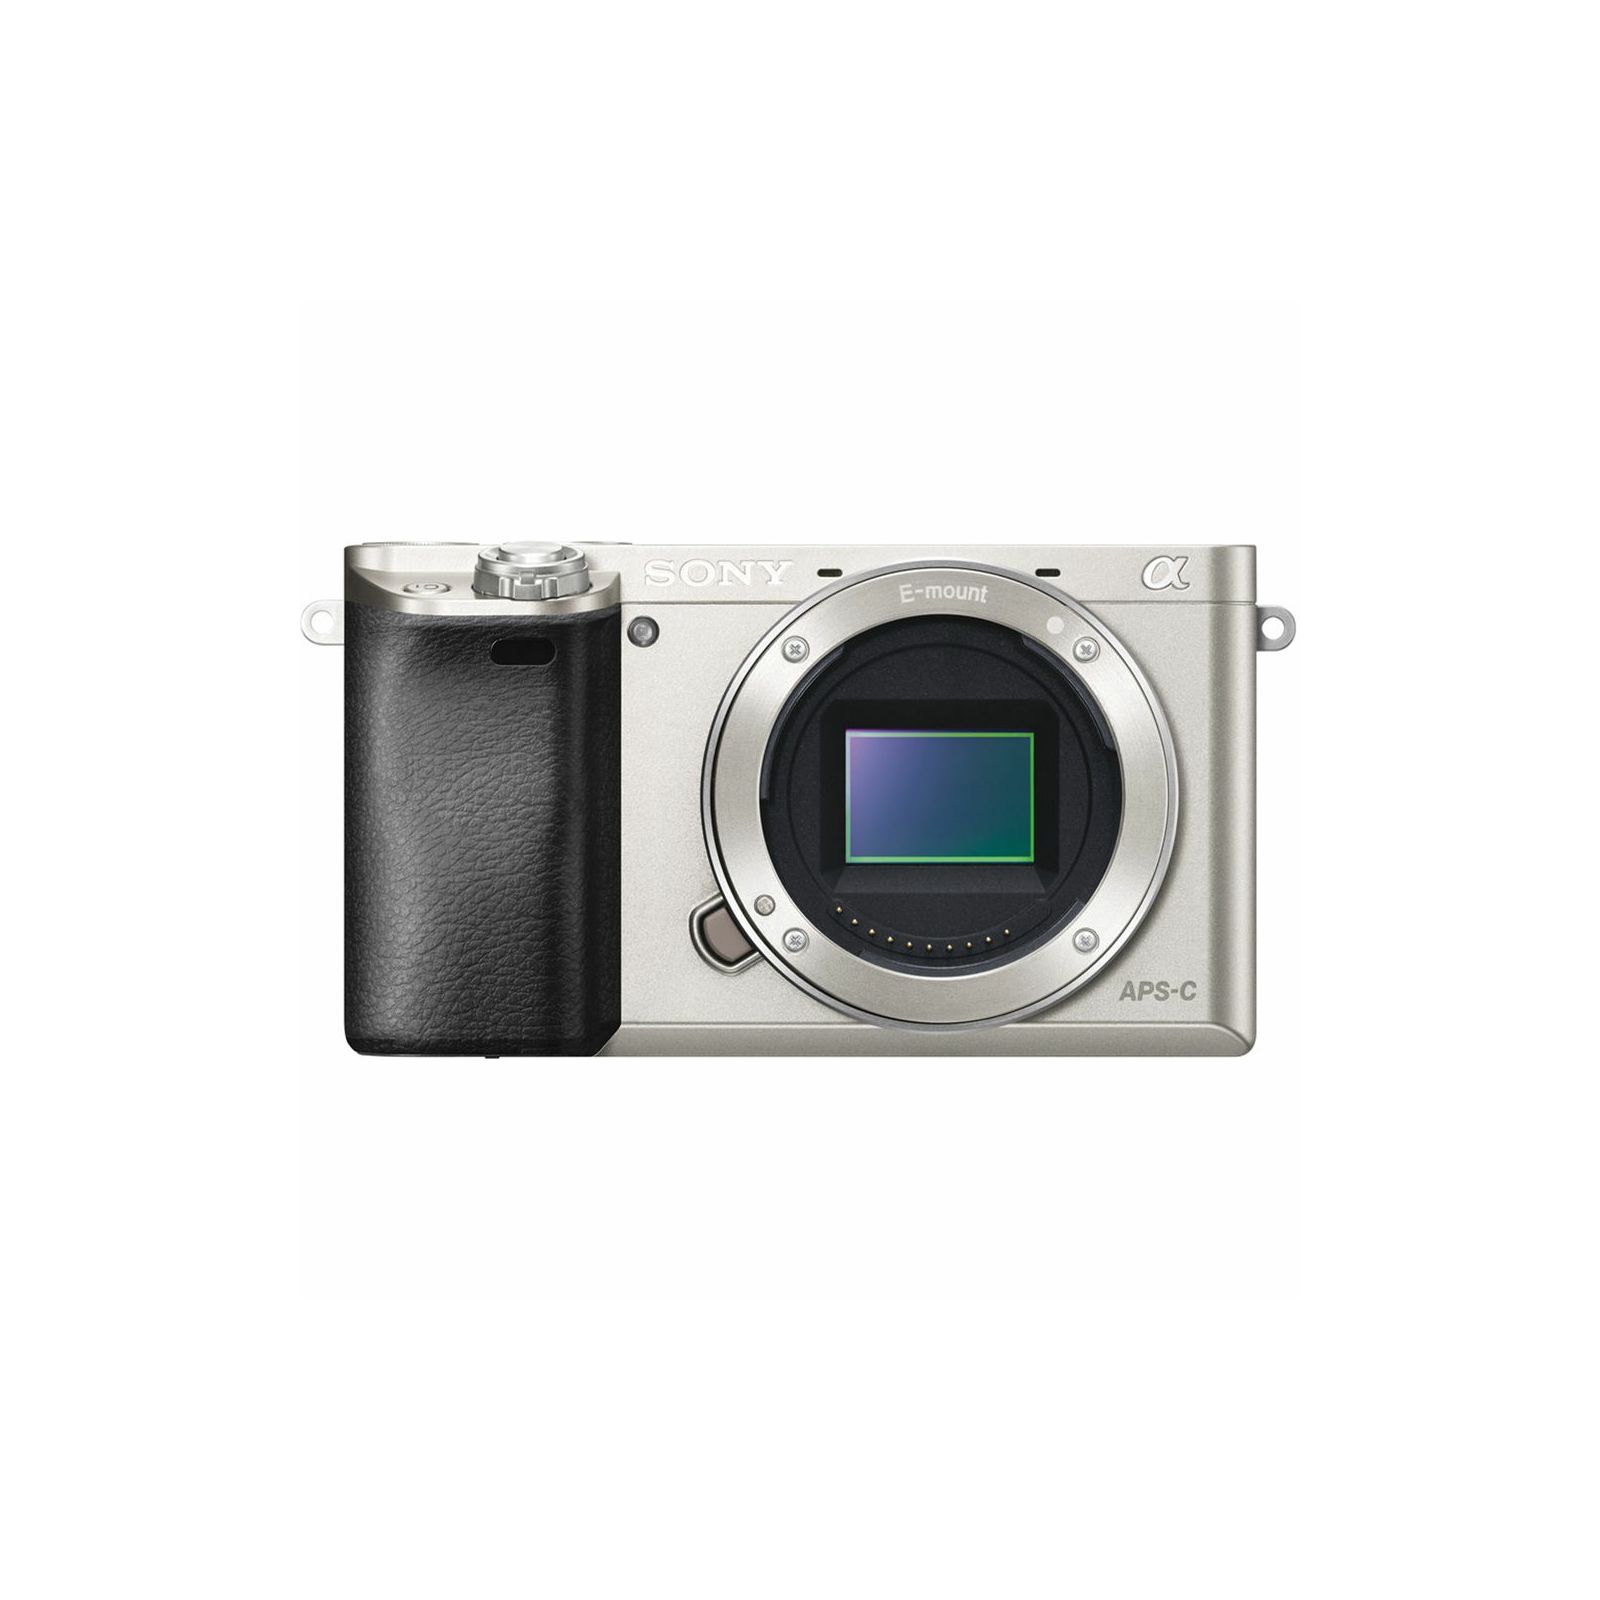 Sony Alpha a6000 + 16-50 f/3.5-5.6 KIT Silver Mirrorless Digital Camera srebreni bezrcalni digitalni fotoaparat i zoom objektiv SEL1650 16-50mm f3.5-5.6 ILCE-6000LS ILCE6000LS (ILCE6000LS.CEC)